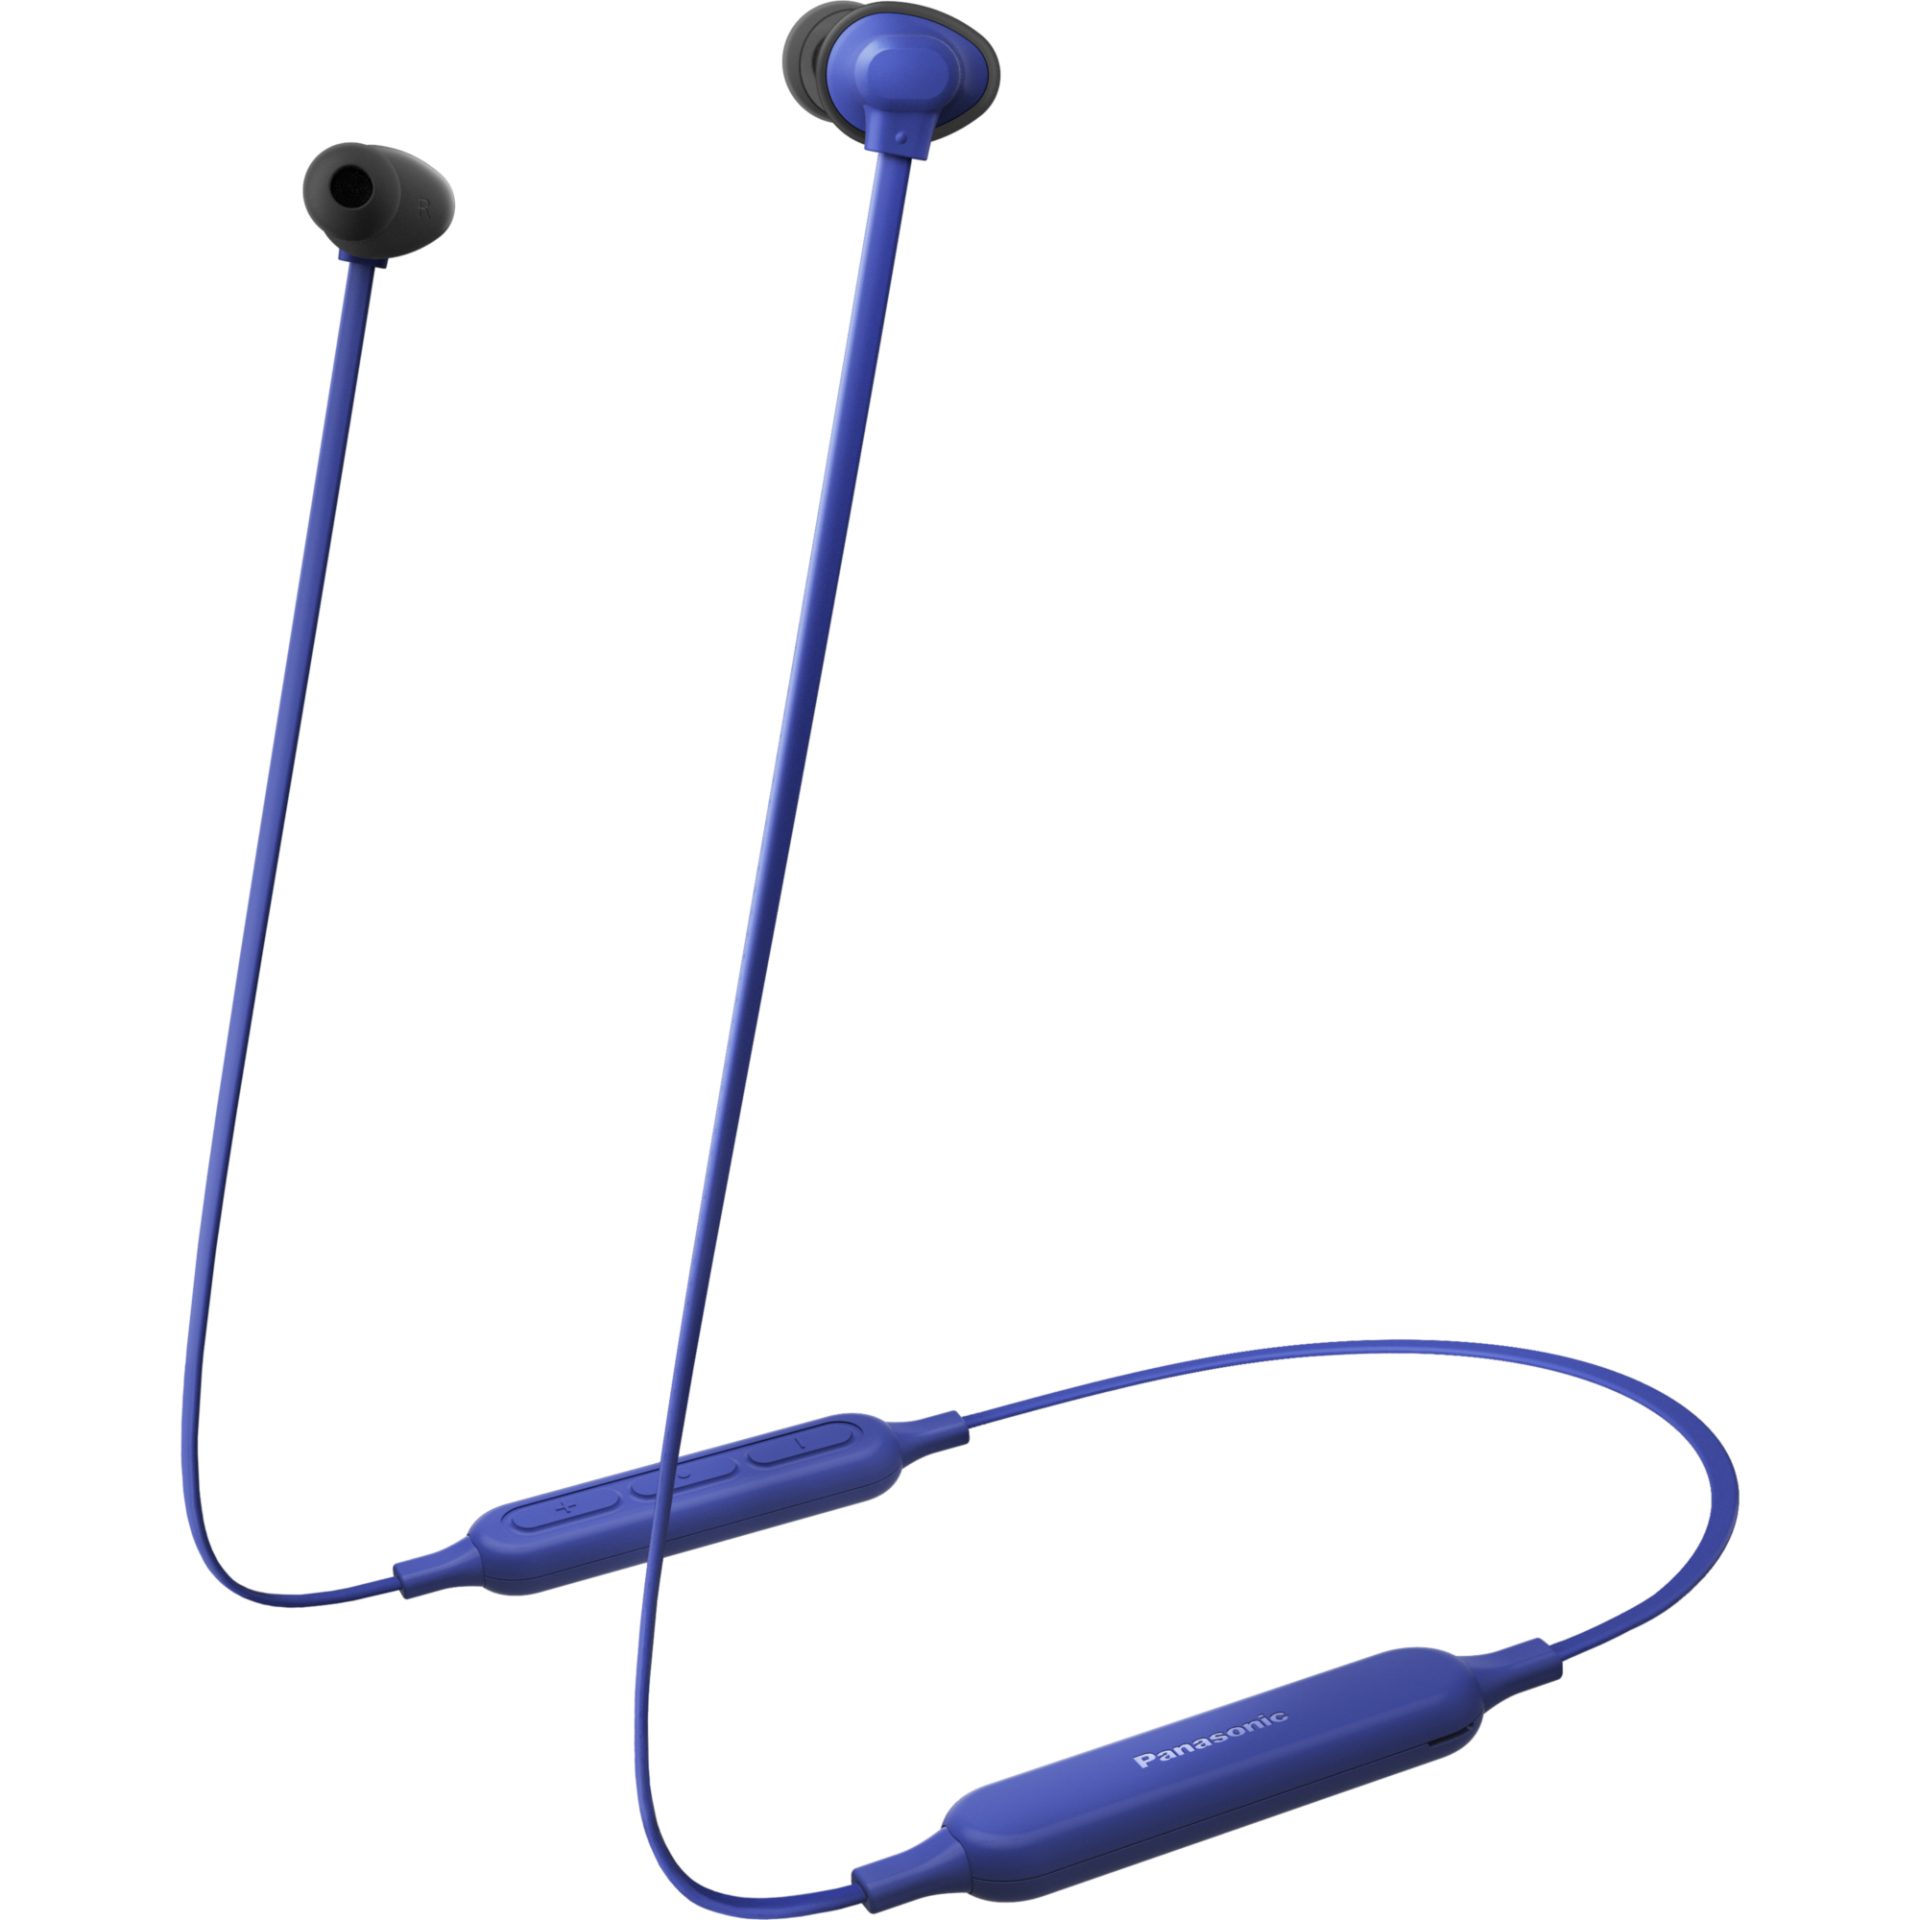 Panasonic RZ-NJ320 bezdrátová sluchátka Bluetooth do uší (ERGOFIT PLUS, Extra Bass System, rychlé nabíjení, 18h přehrávání, plochý kabel), modrá